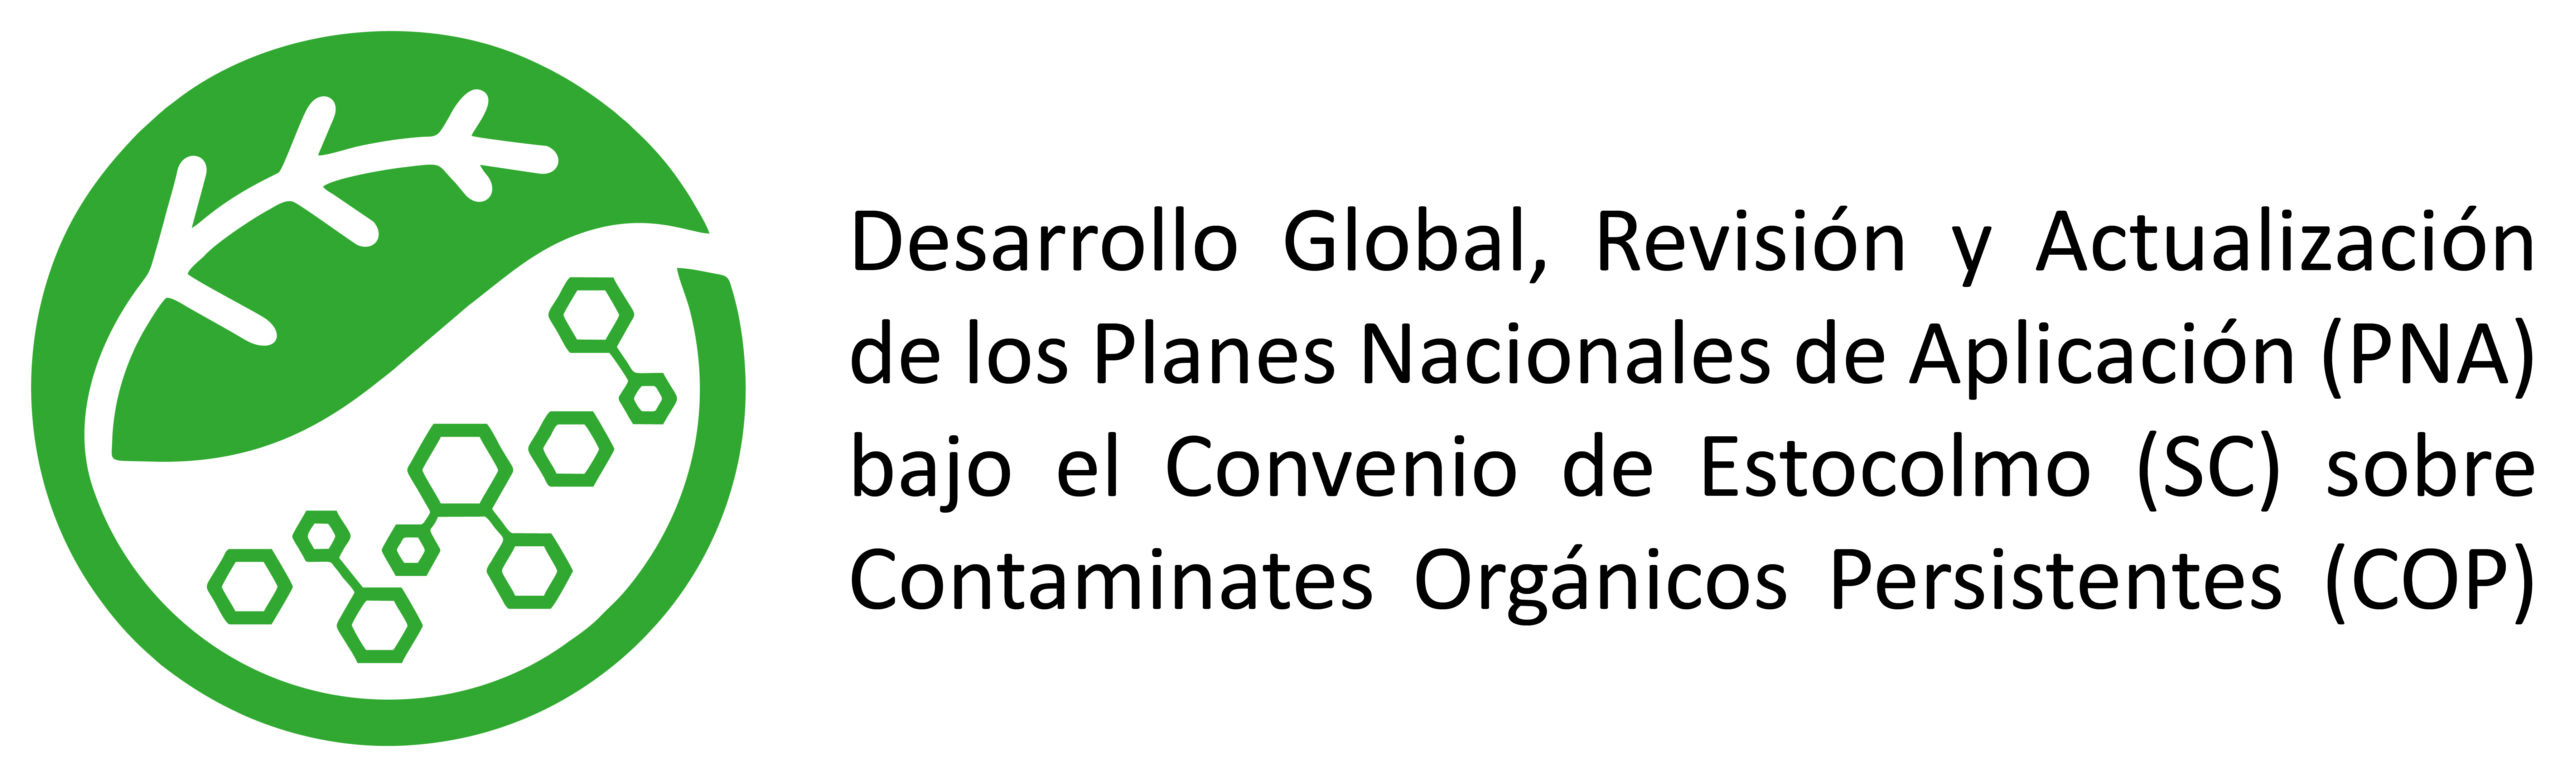 Lanzamiento de Proyecto: Desarrollo Global, Revisión y actualización de los Planes Nacionales de Aplicación (PNA) bajo el Convenio de Estocolmo (CE) sobre Contaminantes Orgánicos Persistentes (COP) en Perú